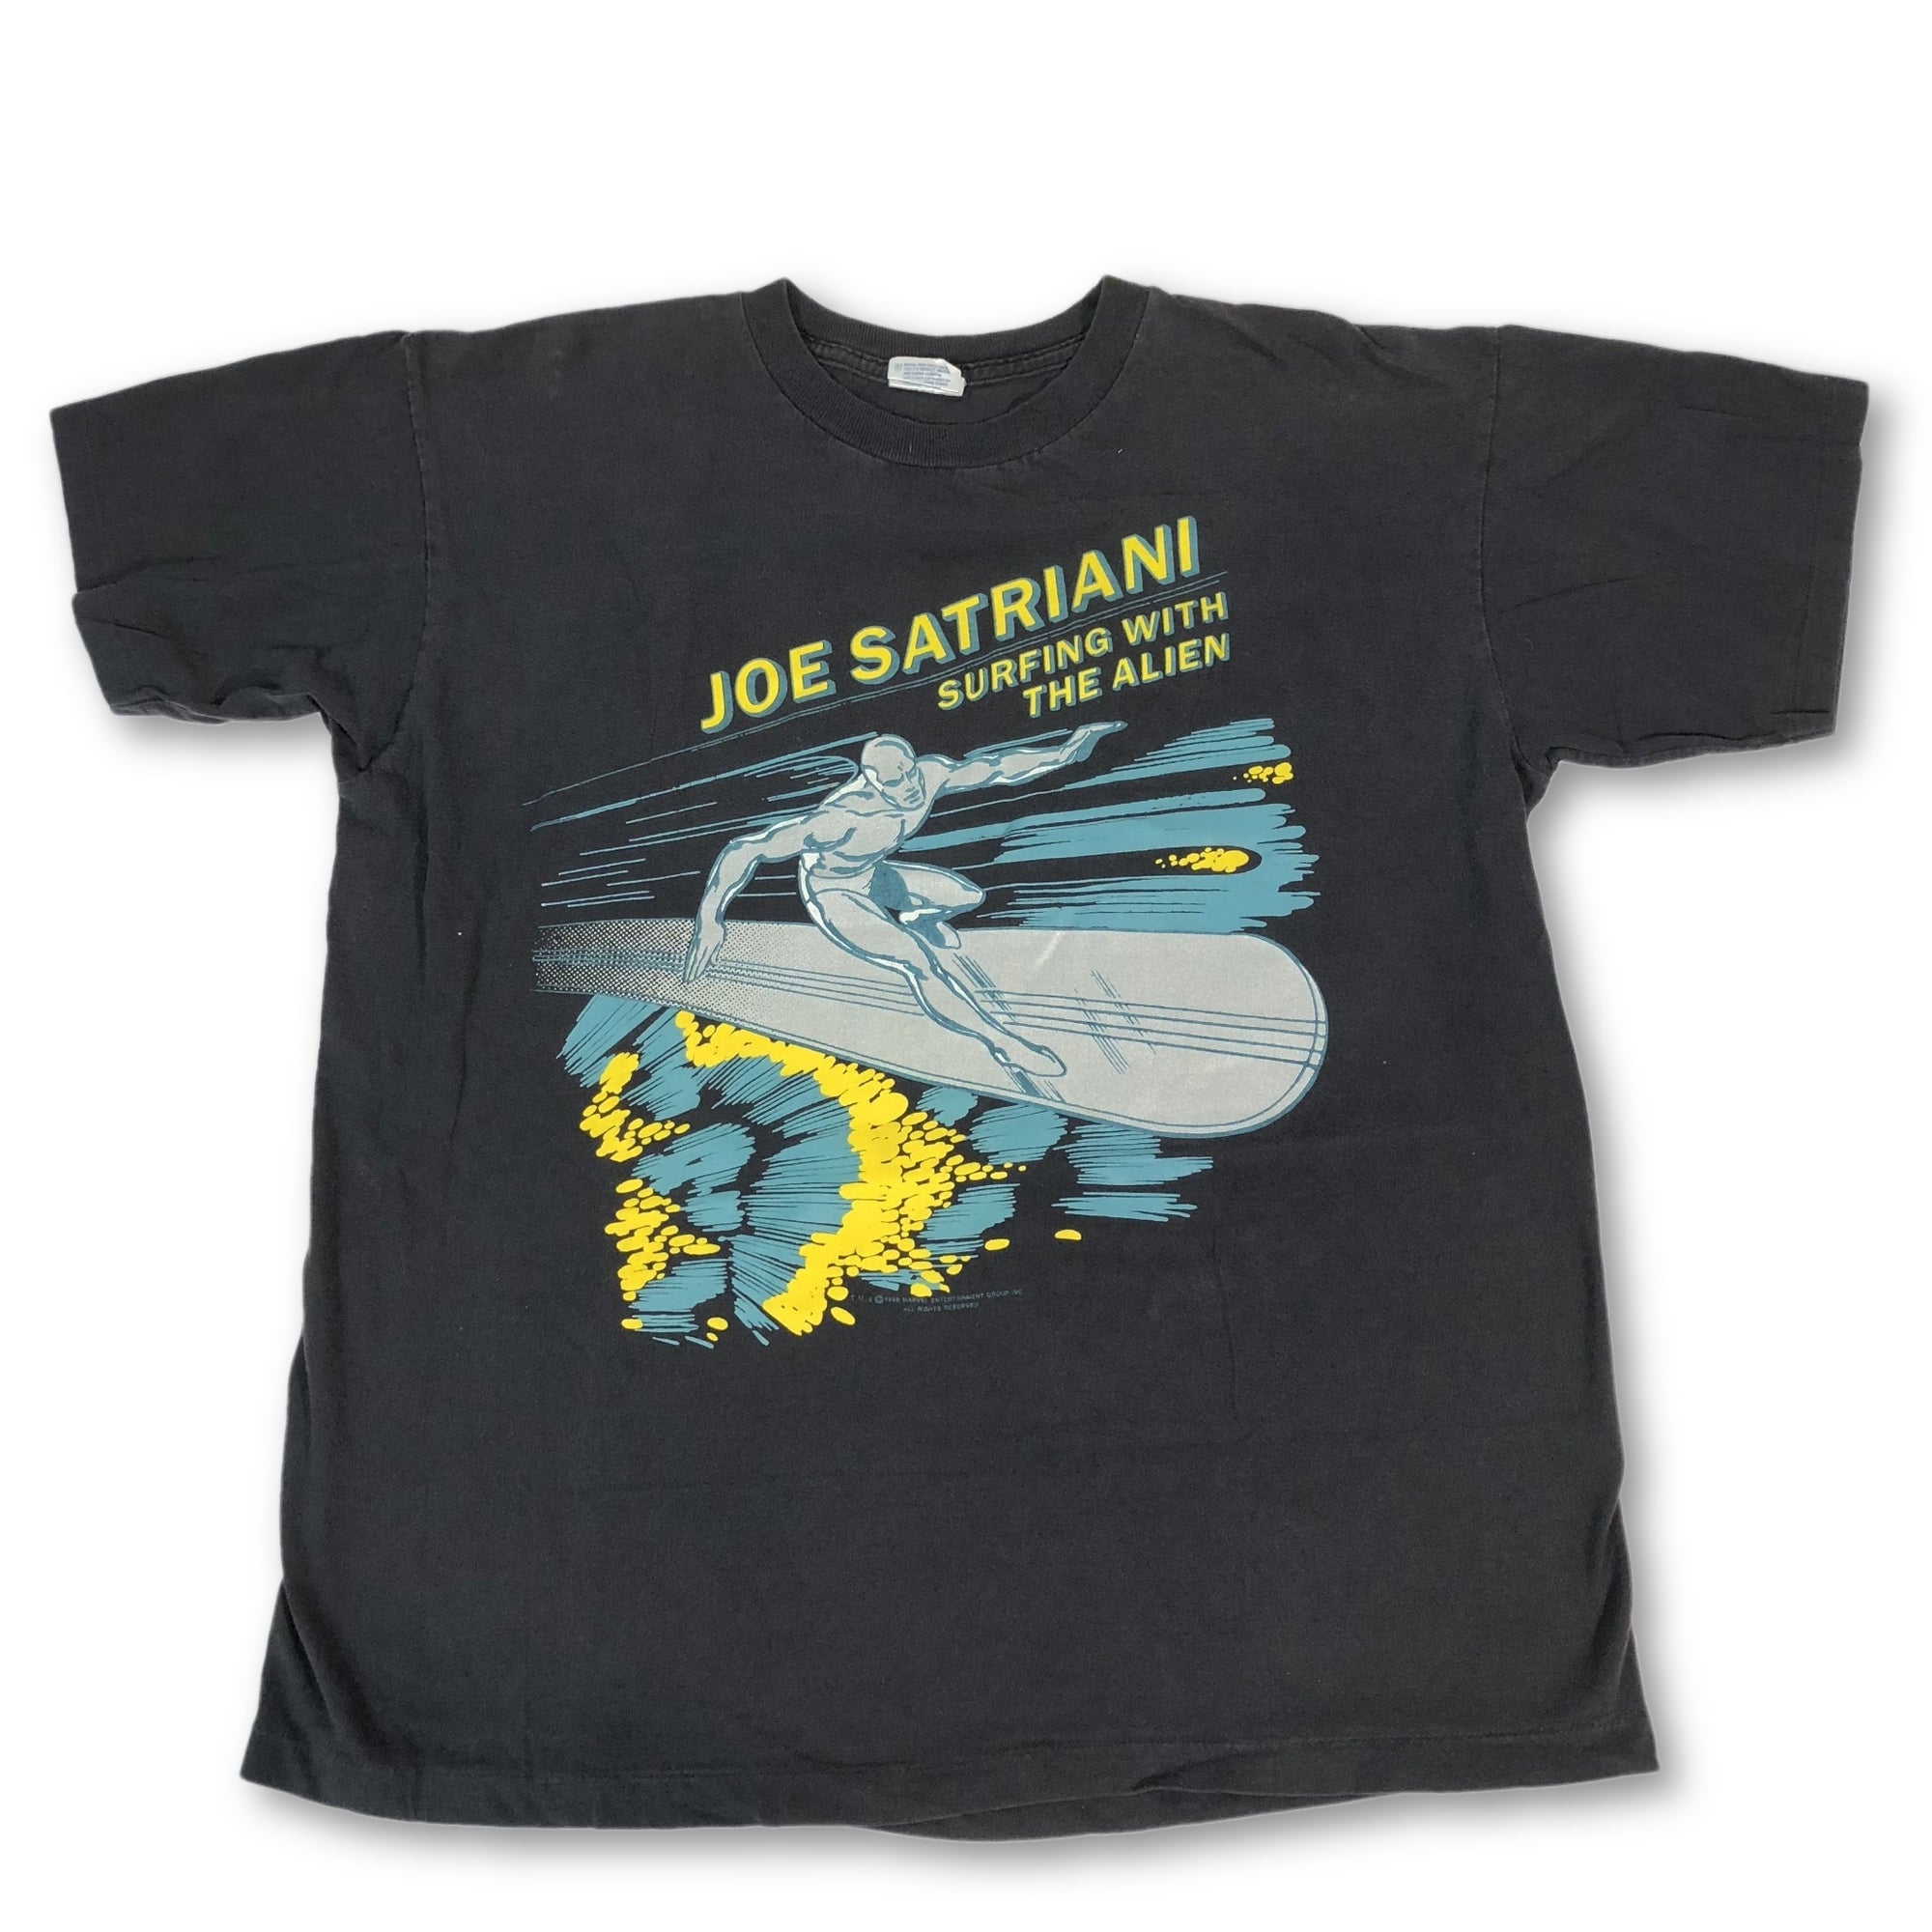 Vintage Joe Satriani "Surfing With The Alien" T-Shirt - jointcustodydc